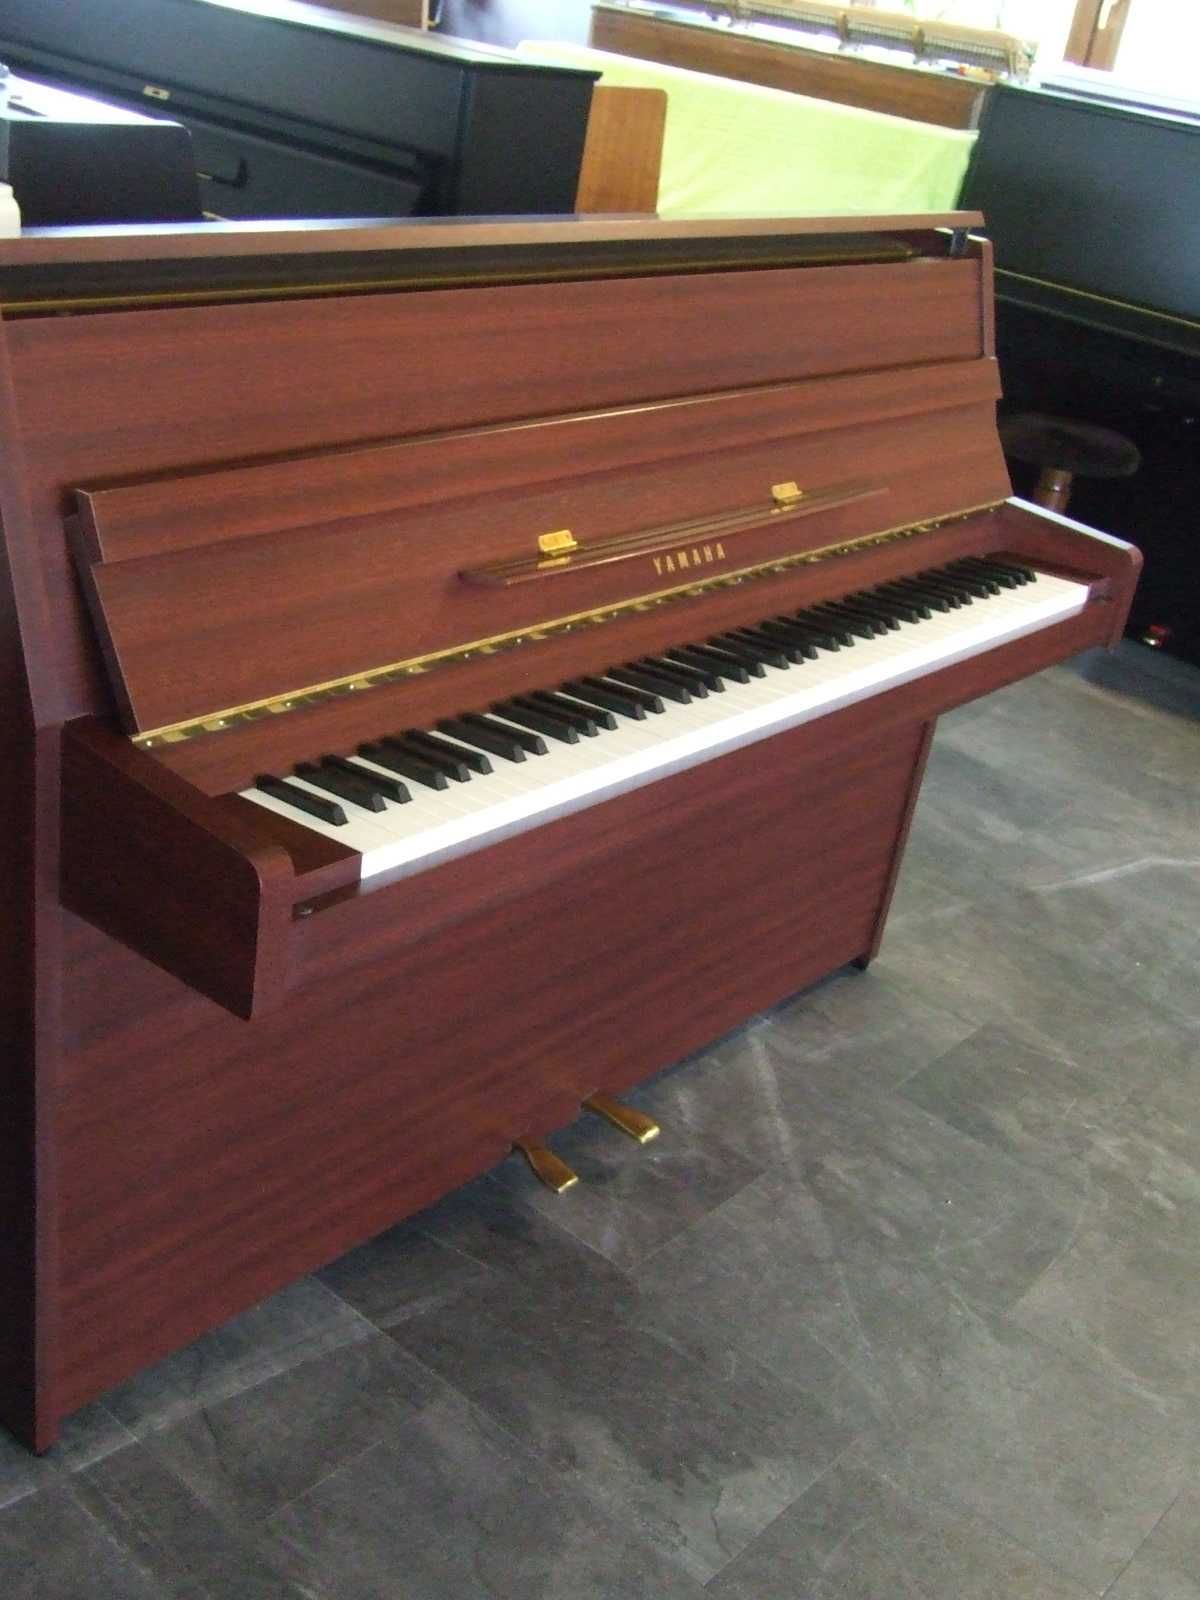 Pianino Yamaha mod E 108 z 1998 r., made in Japan